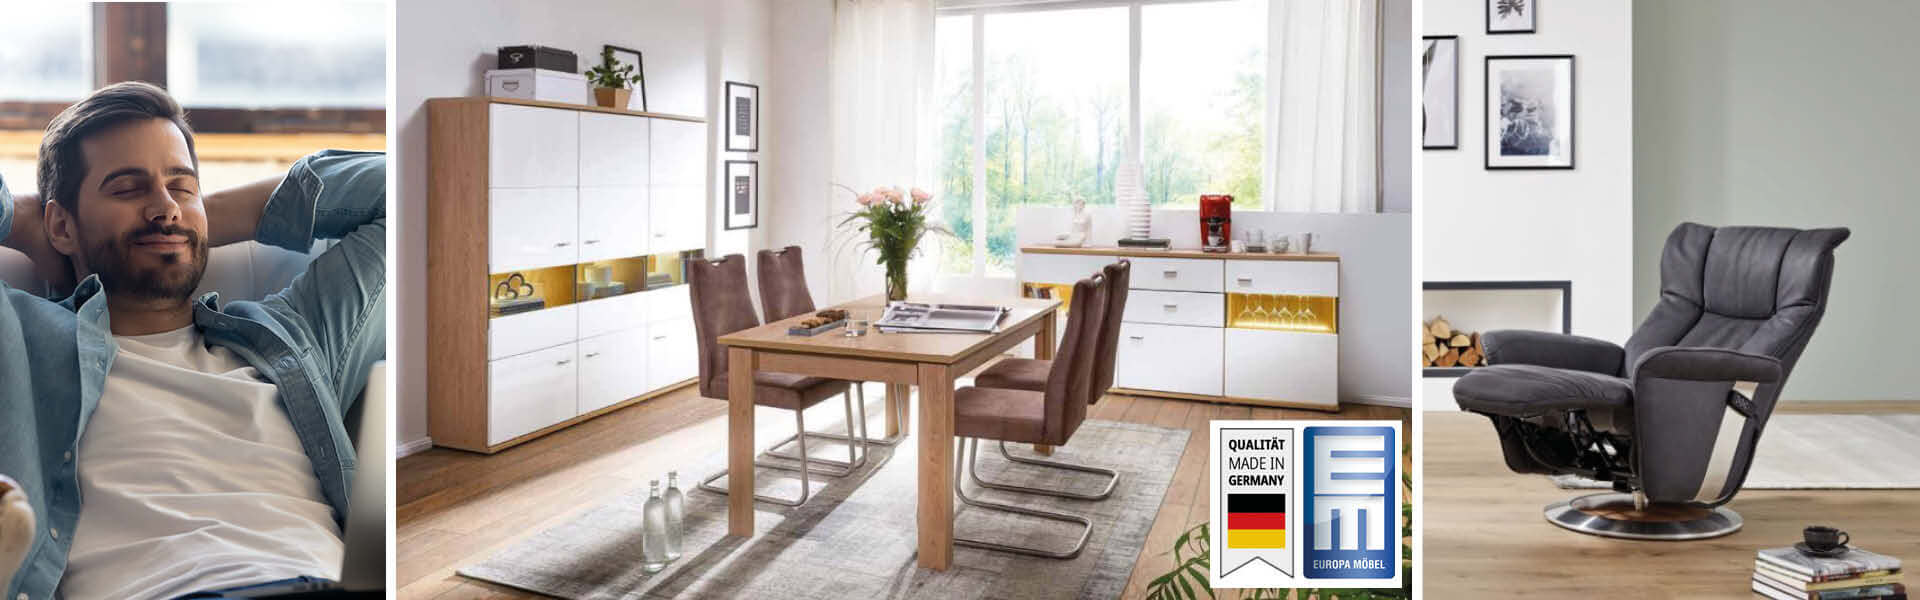 Wohnzimmer und Sessel, Möbel made in Germany